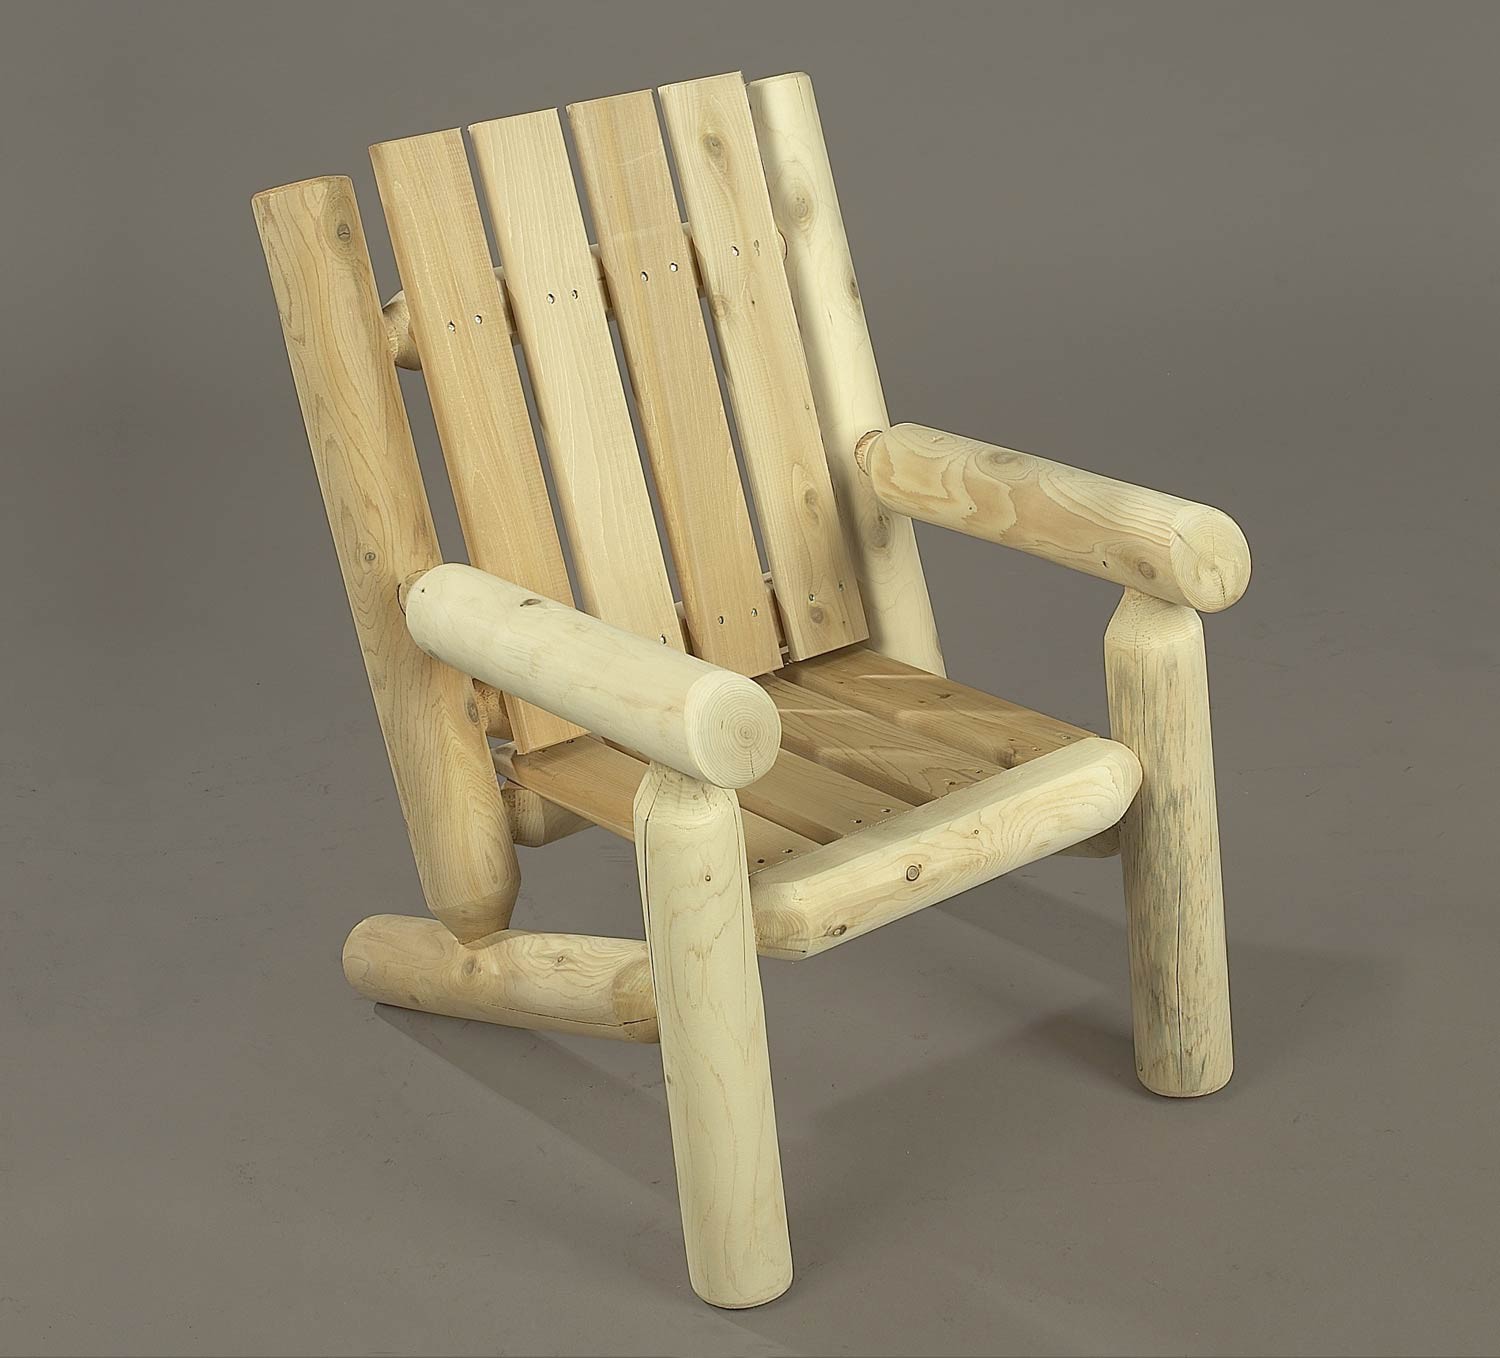 Rustic Natural Cedar Junior Log Chair